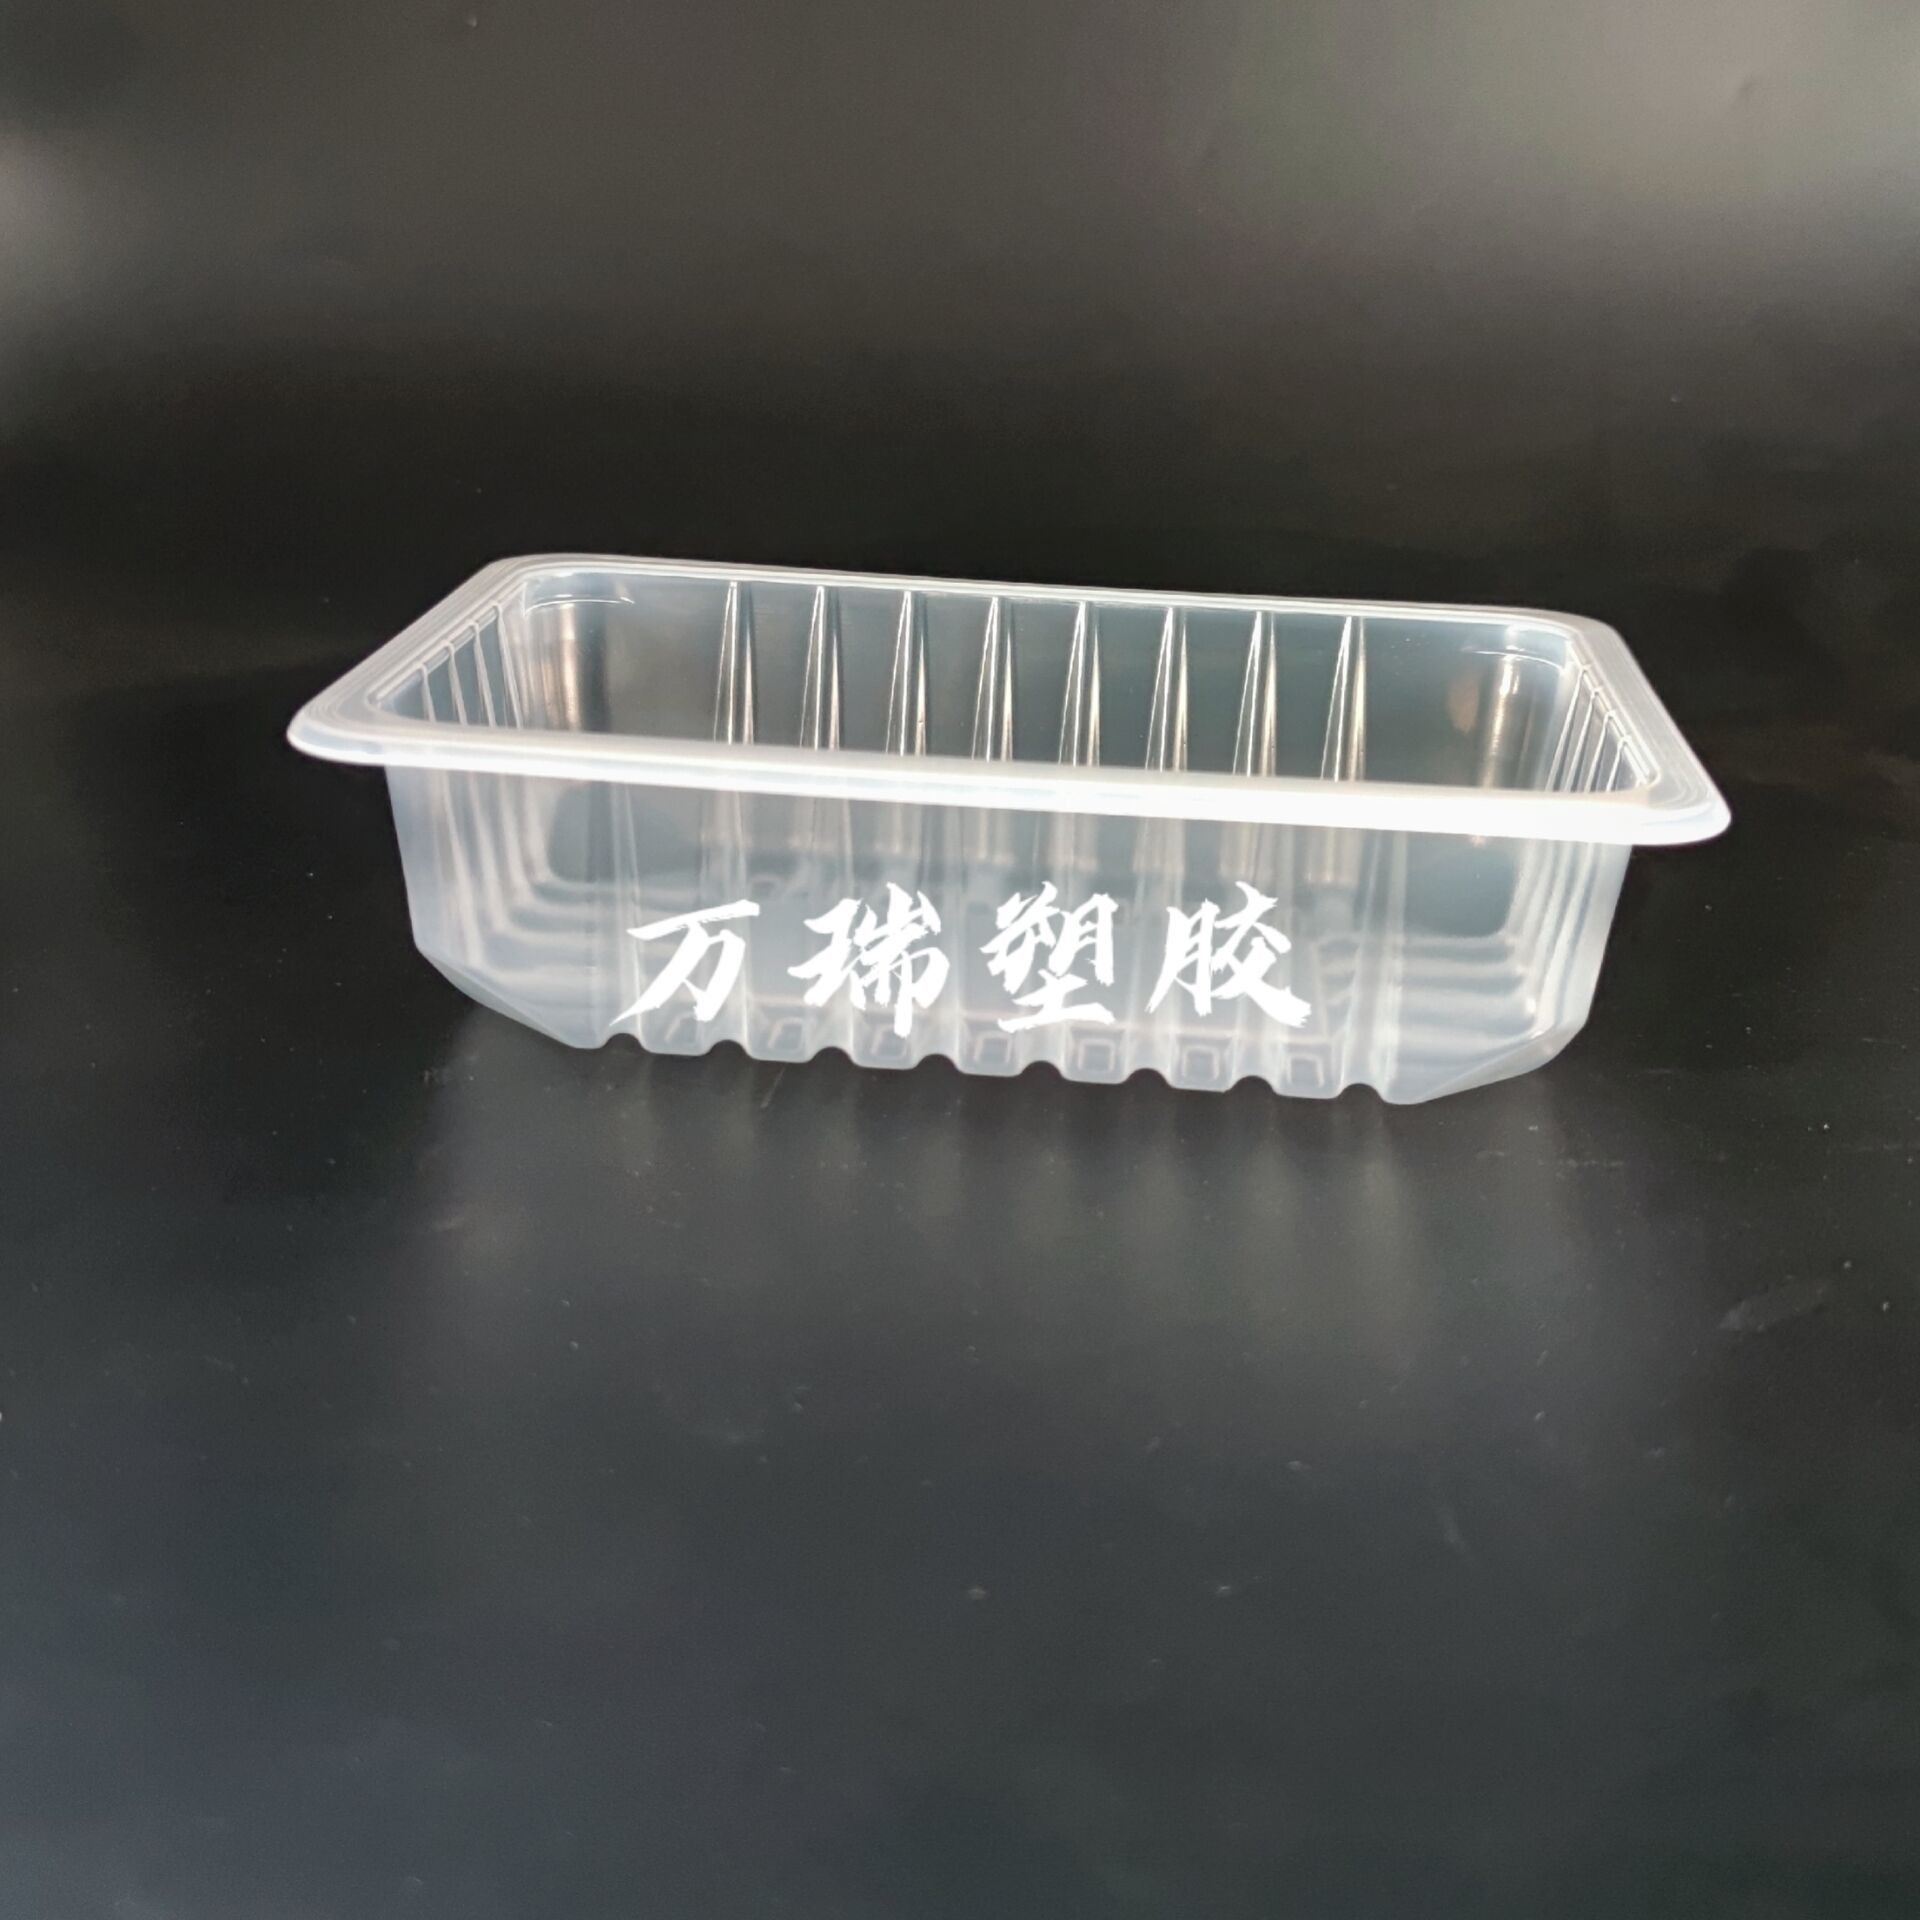 万瑞塑胶冷冻豆制品耐低温塑料盒聚美盒豆制品包装供应厂家芽肧包装可封口塑料盒0c01图片